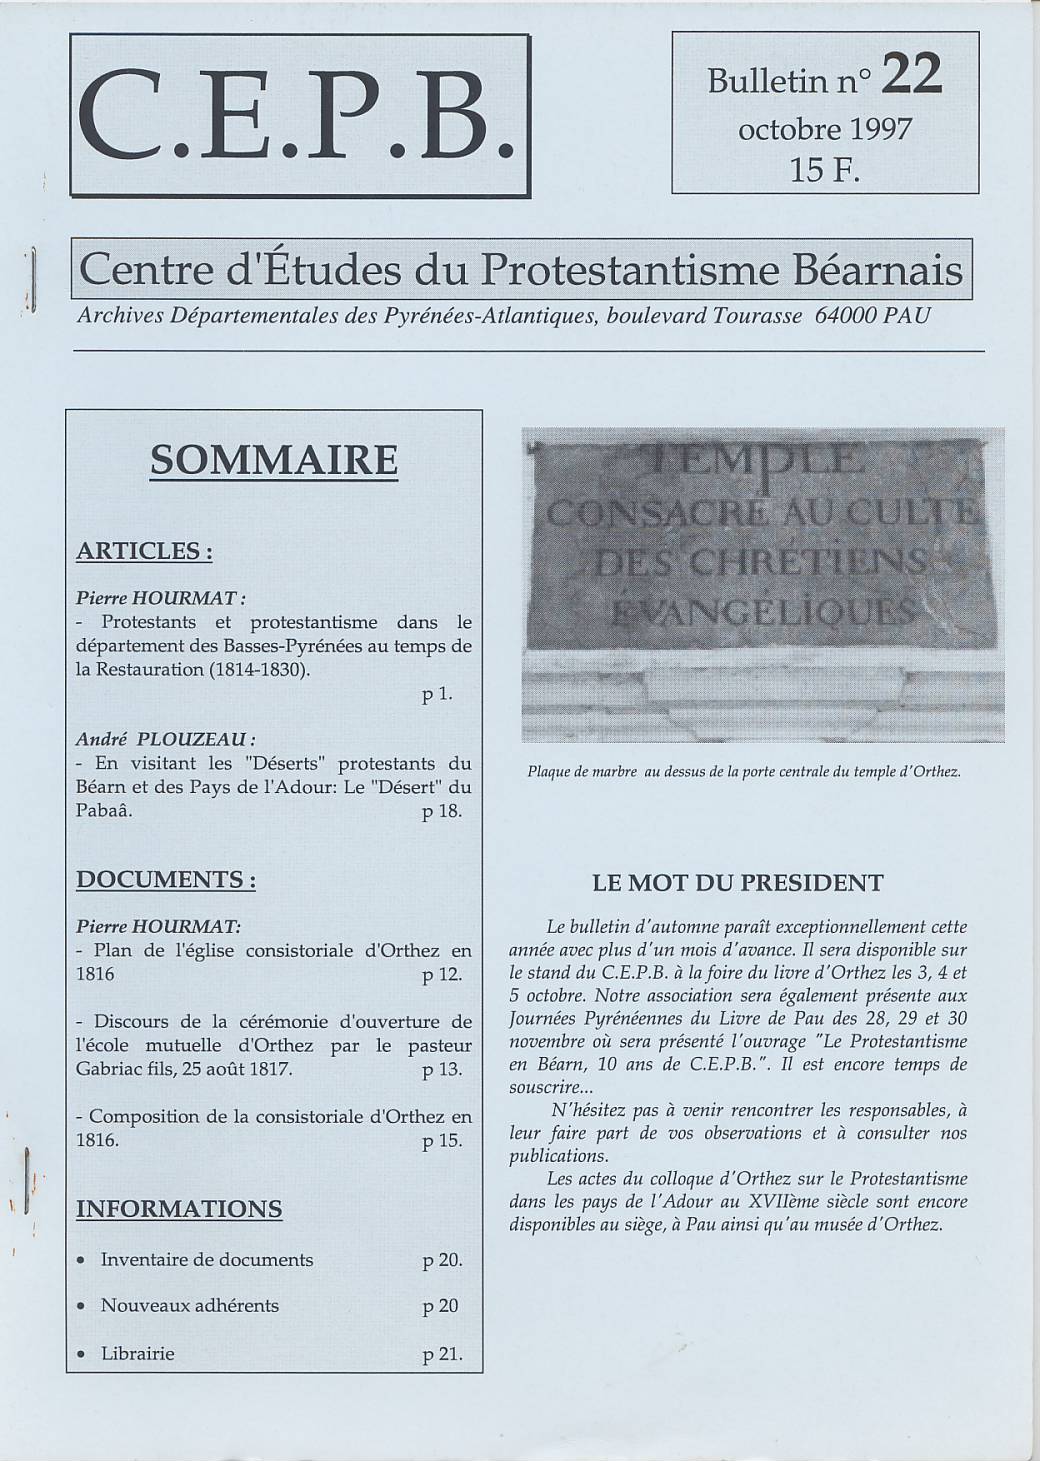 CEPB protestantisme Béarn bulletin 22